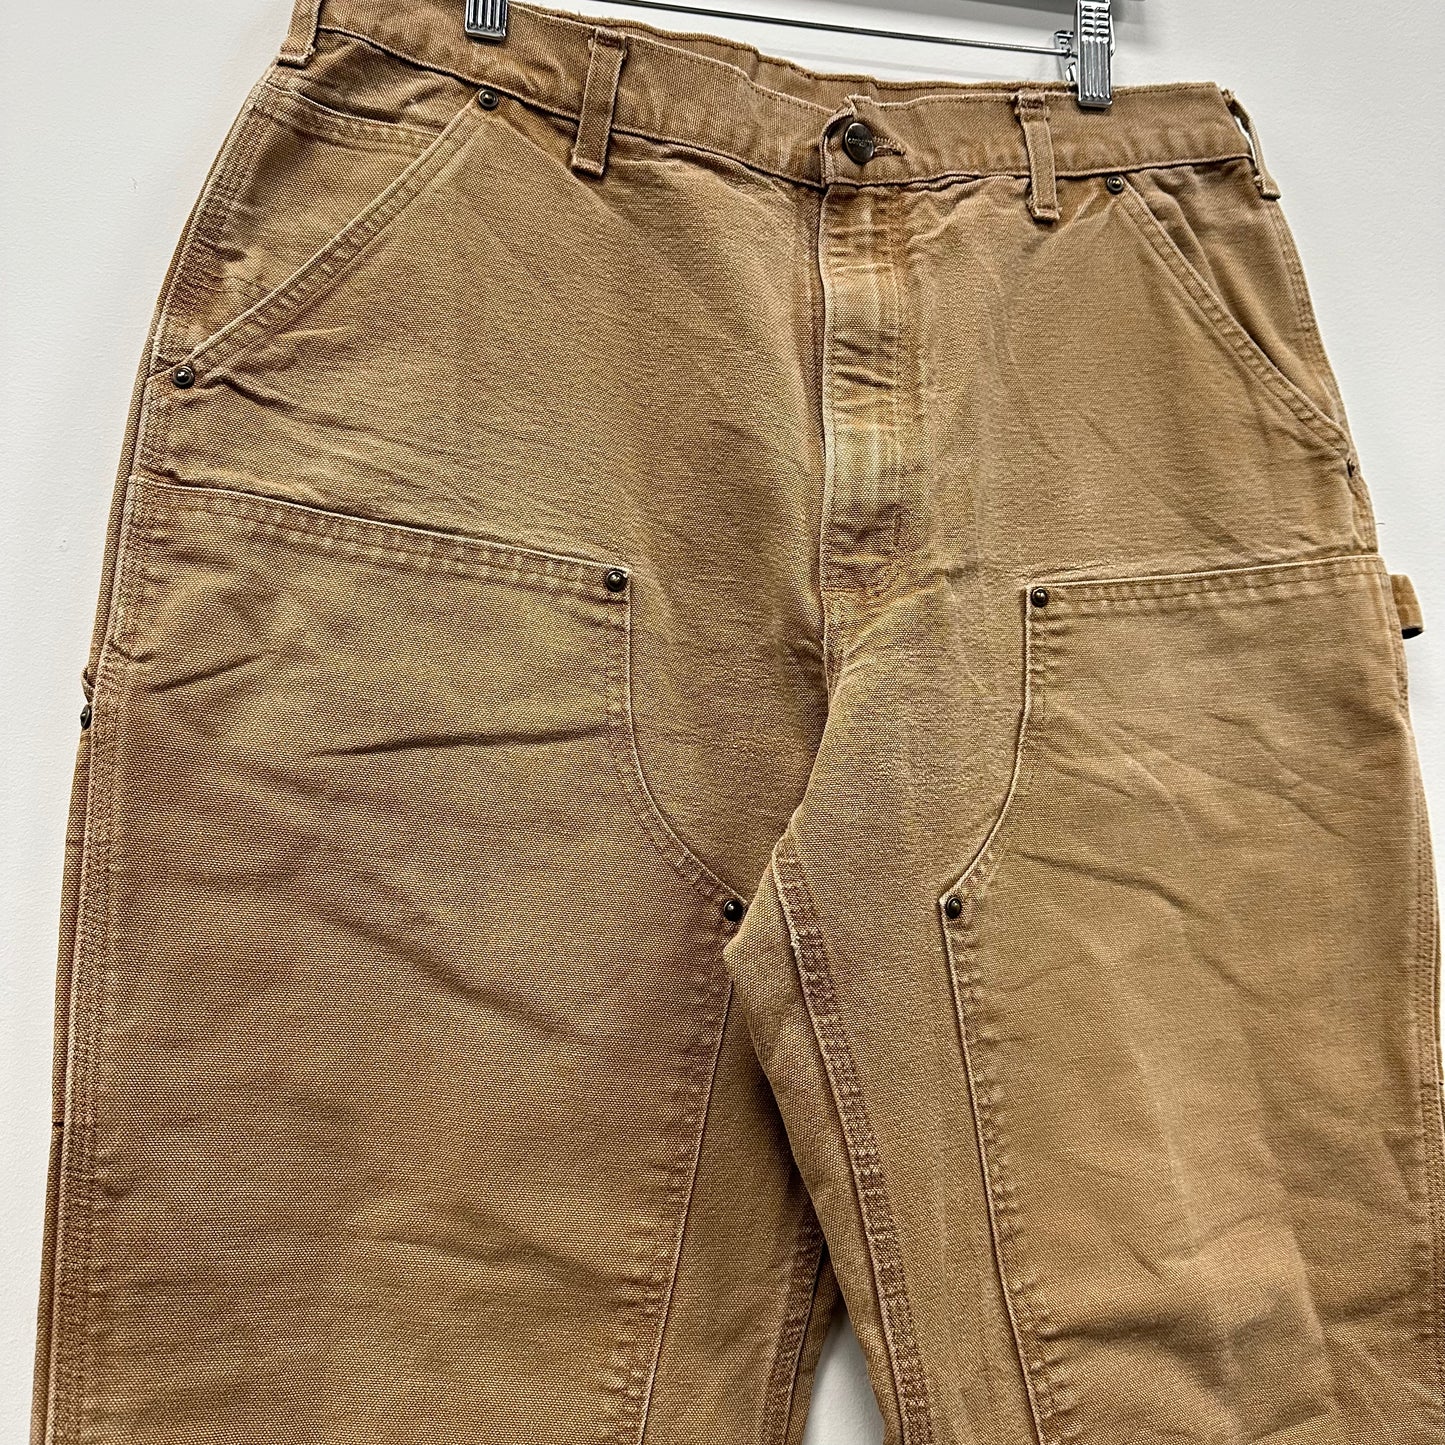 Carhartt Brown Double Knee Pants - 36x30